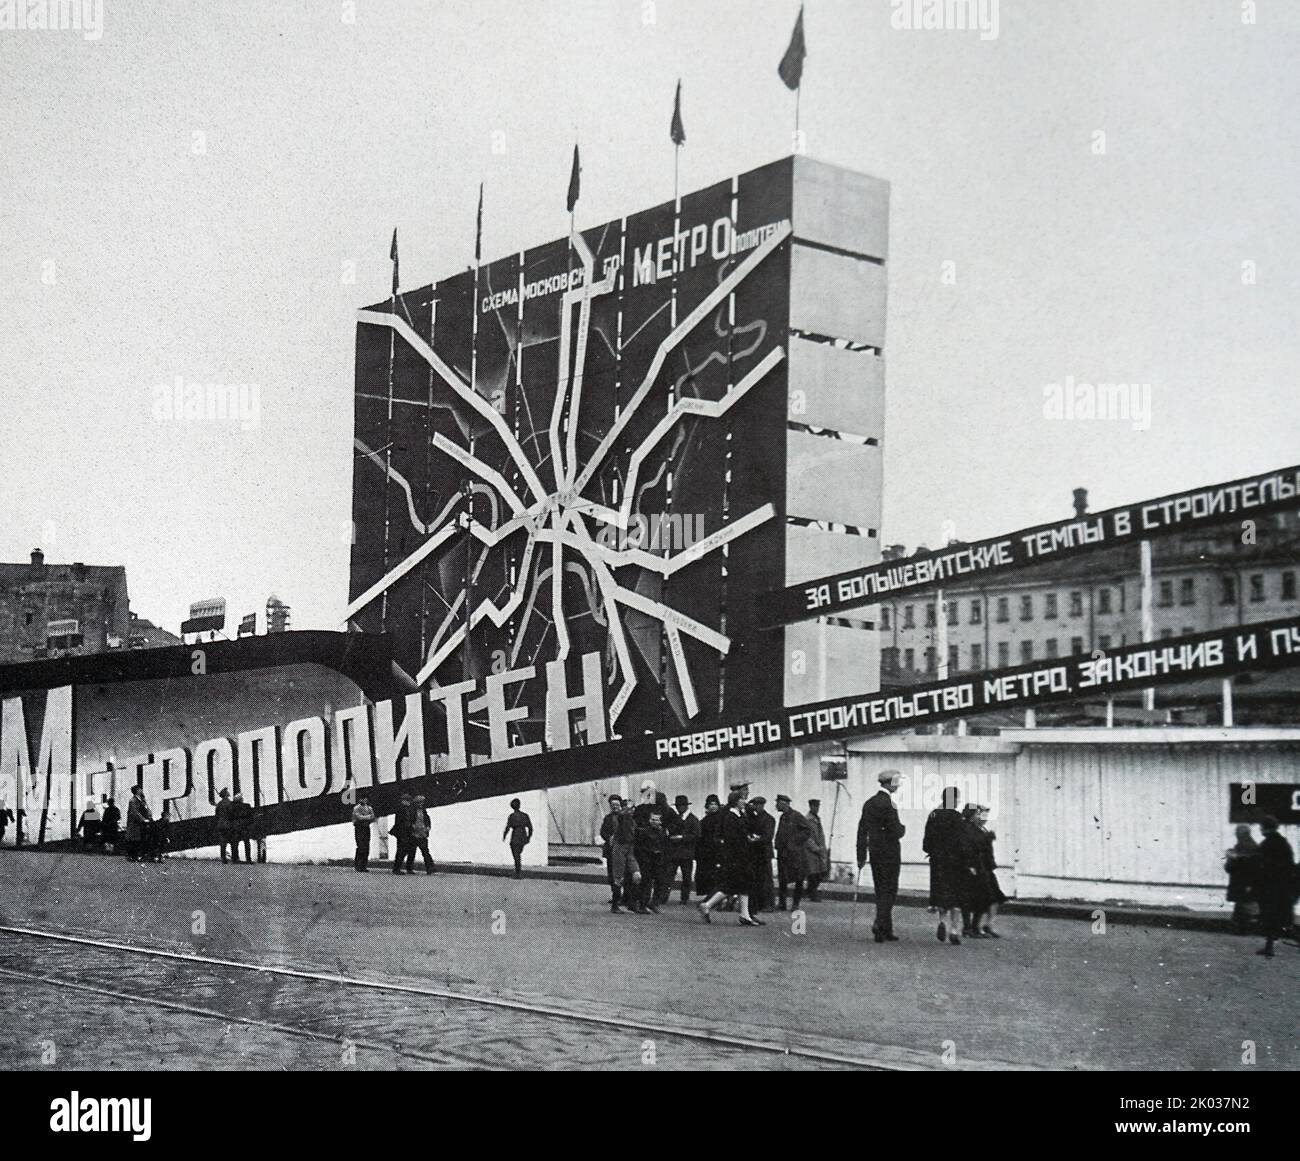 S. Troshin, B. A. Rodionov, N. A. Musatov. Installazione decorativa 'Metropolitan' a Okhotny Ryad a Mosca il 1 maggio 1932. Foto. Foto Stock